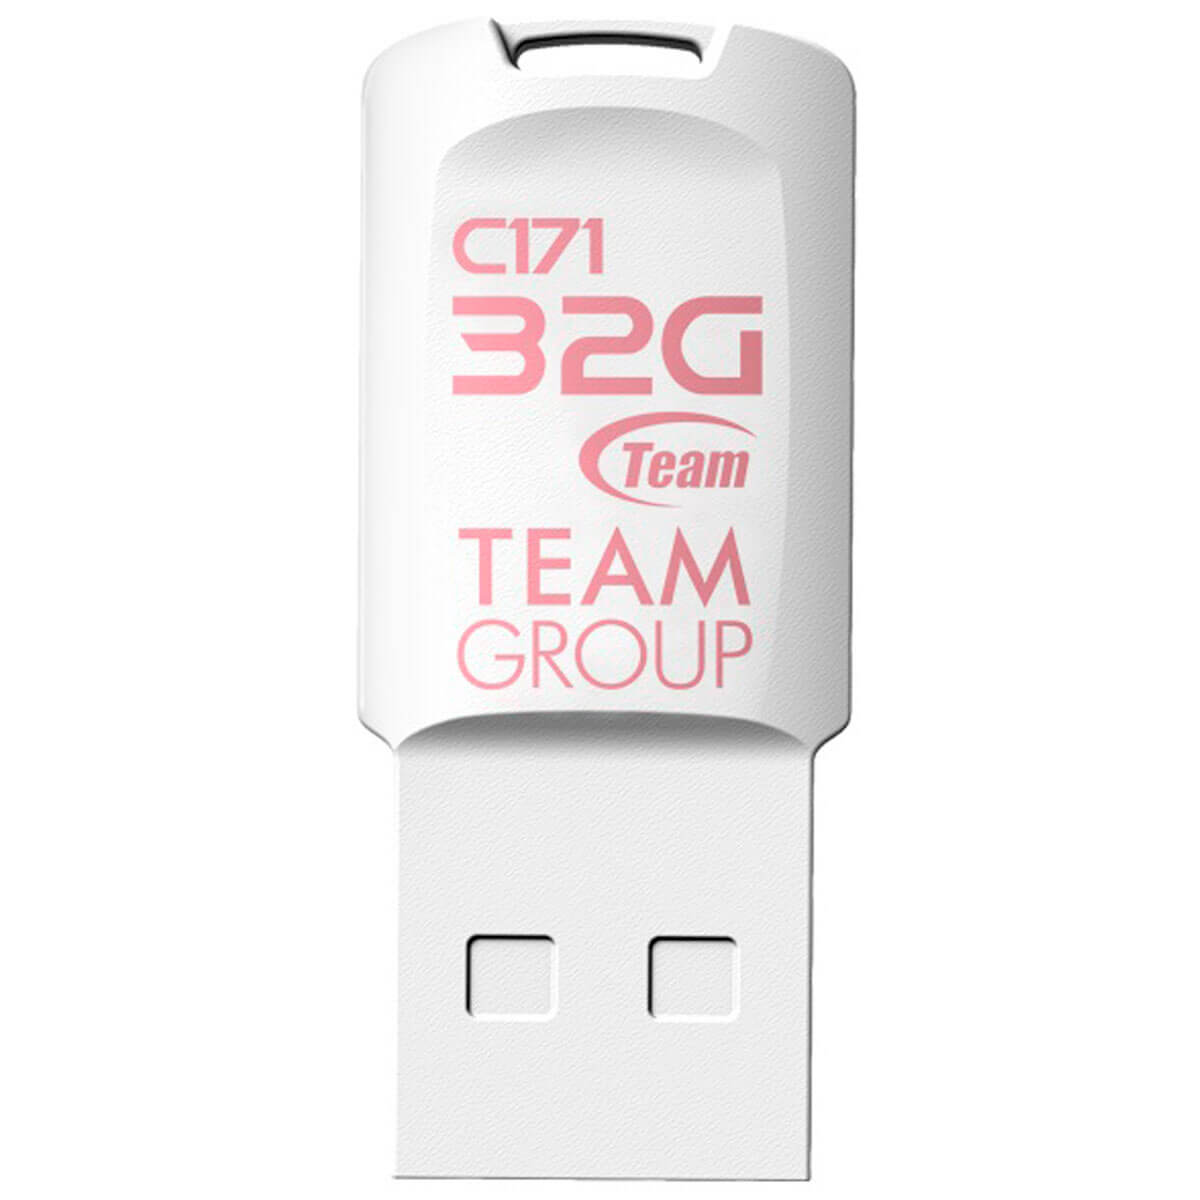 Флеш накопитель 32GB Team C171 White (TC17132GW01)